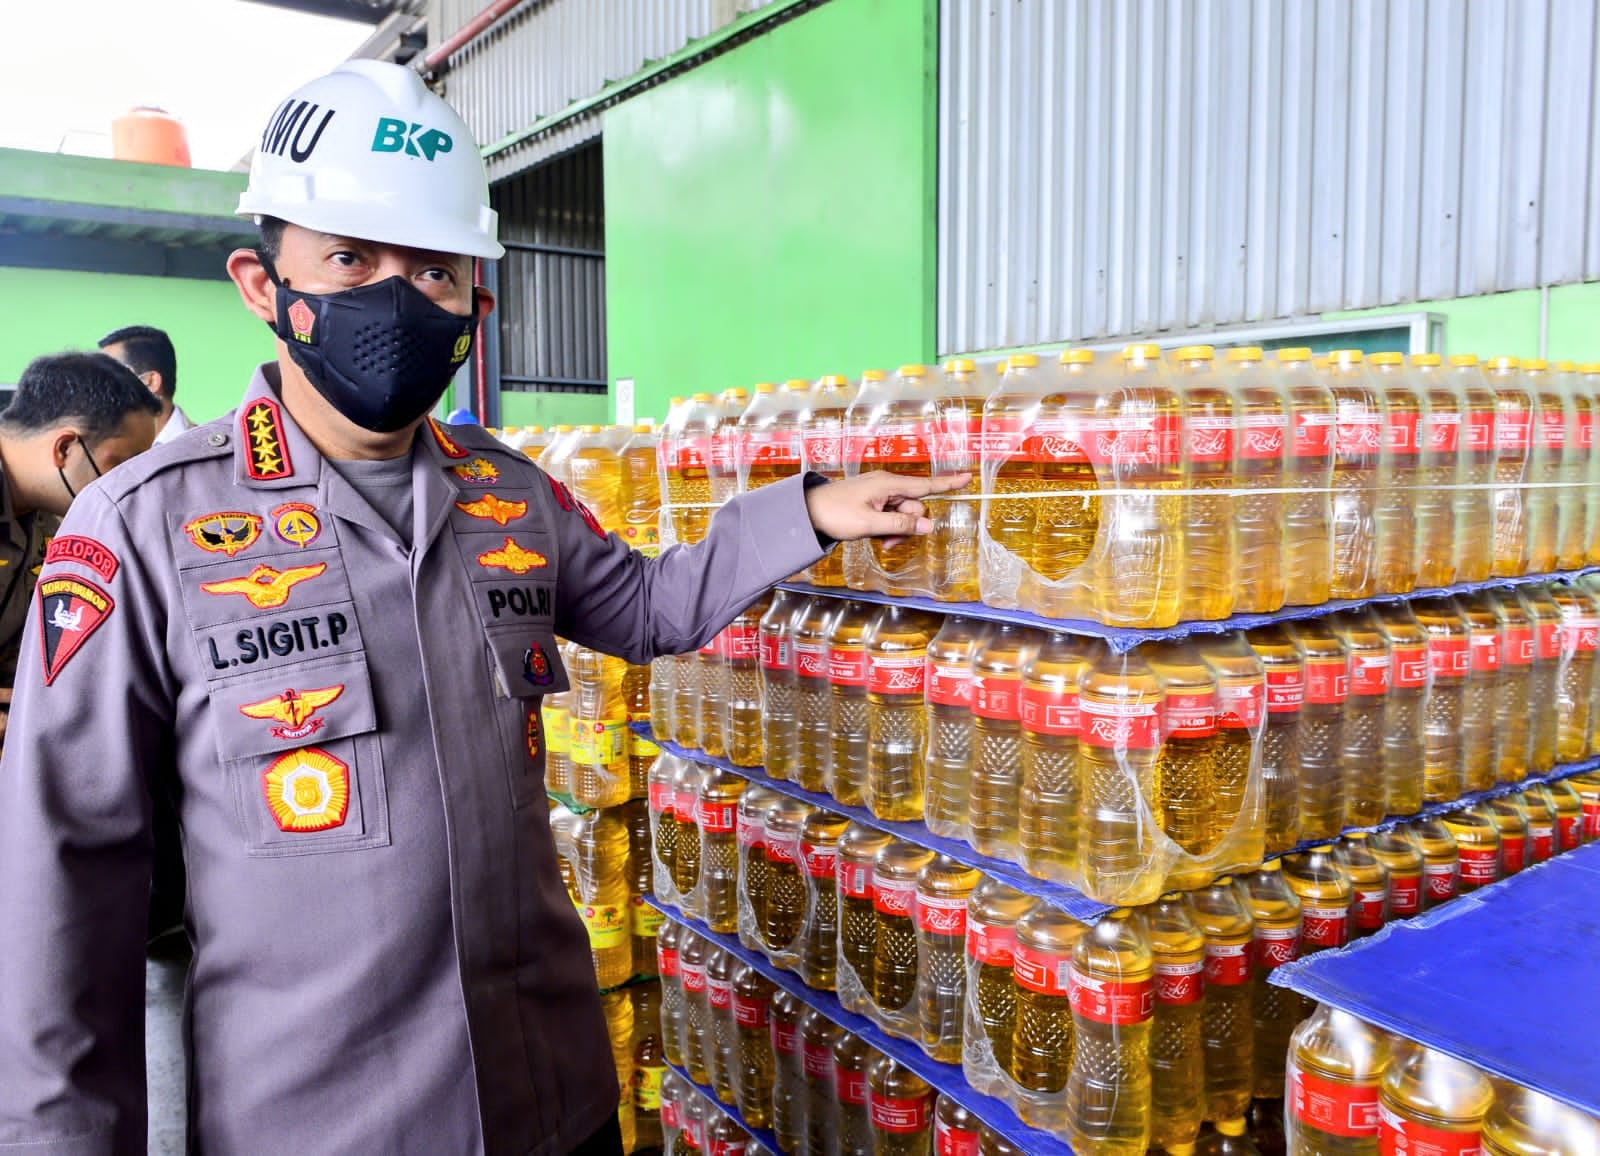 Kapolri dan Menteri Perdagangan Sidak Pabrik Minyak Goreng di Cilincing, Jakarta Utara